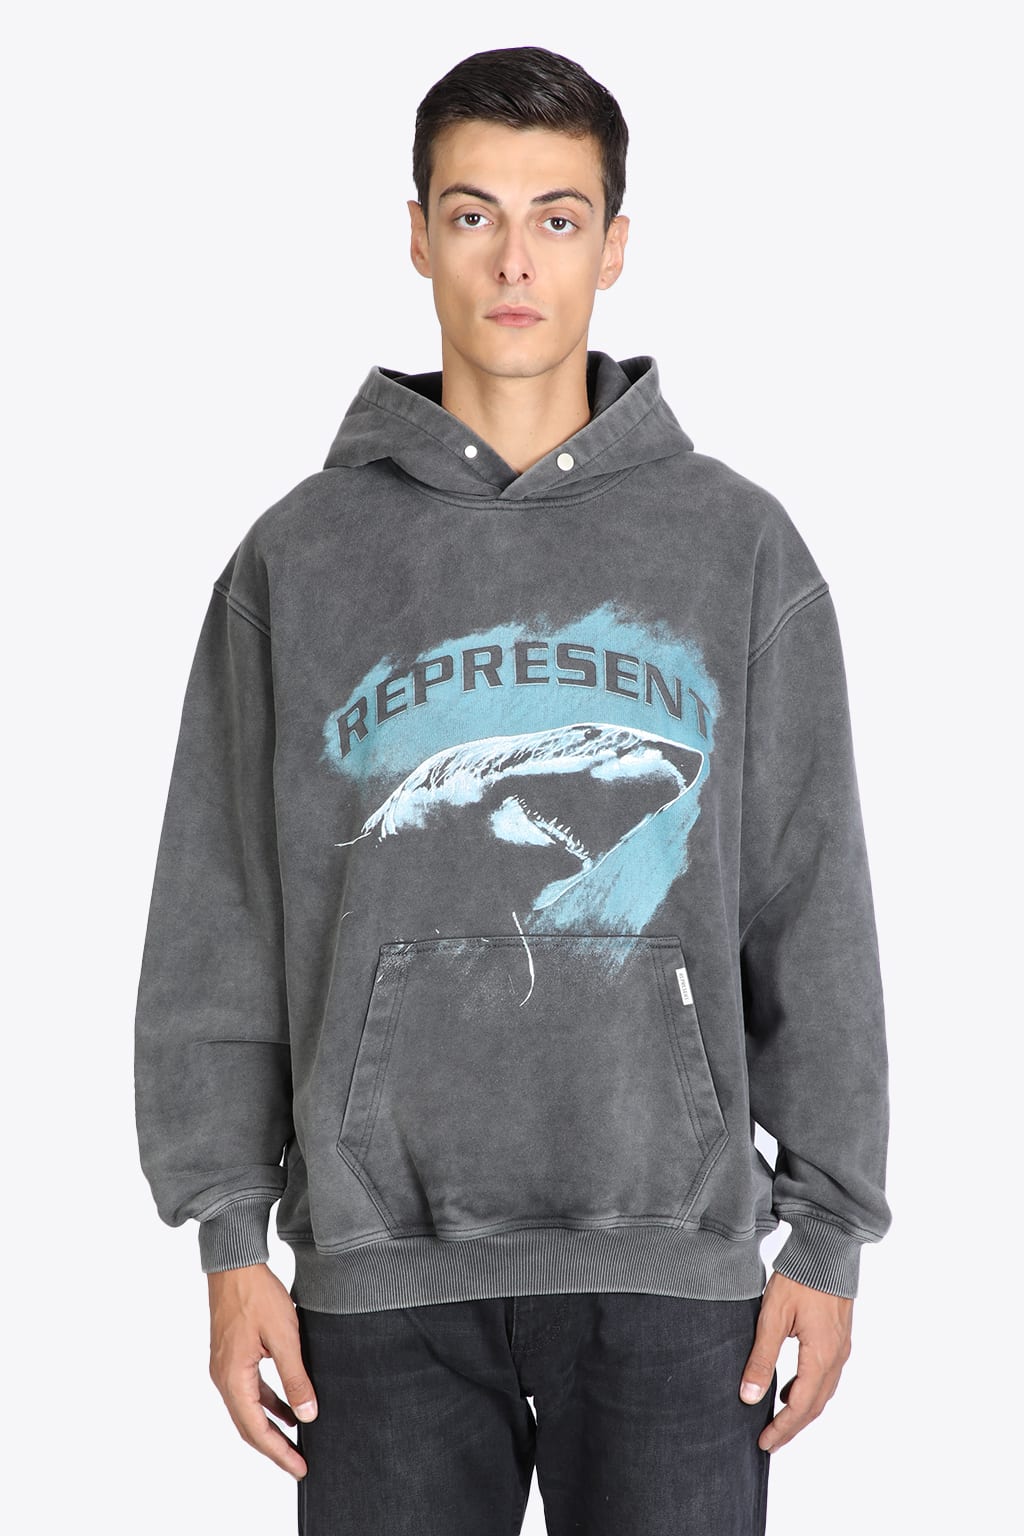 REPRESENT Shark Hoodie Faded grey hoodie with logo - Shark hoodie